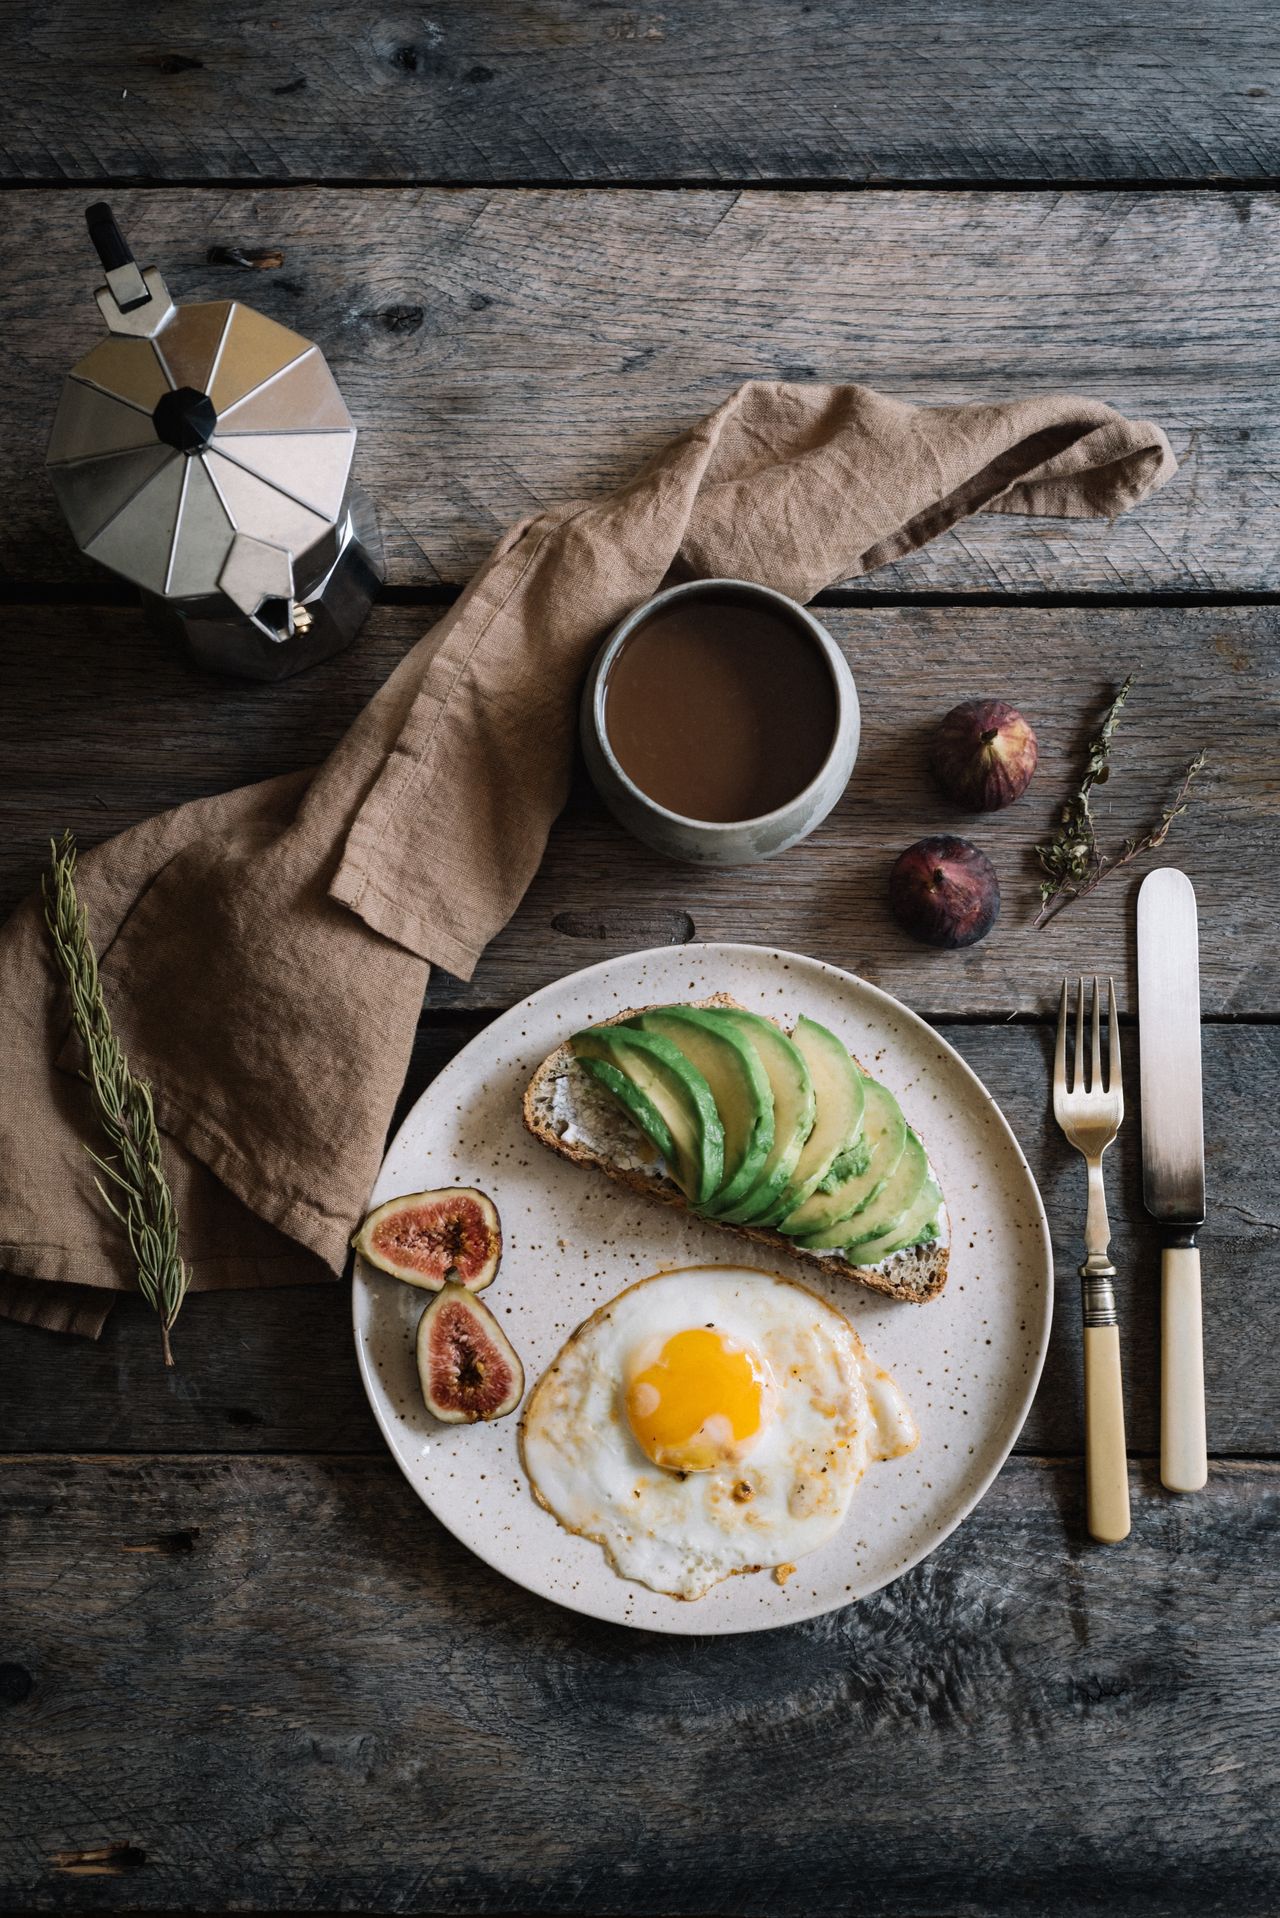 Zdrowe śniadanie wytrawne - jajko sadzone i grzanka z awokado